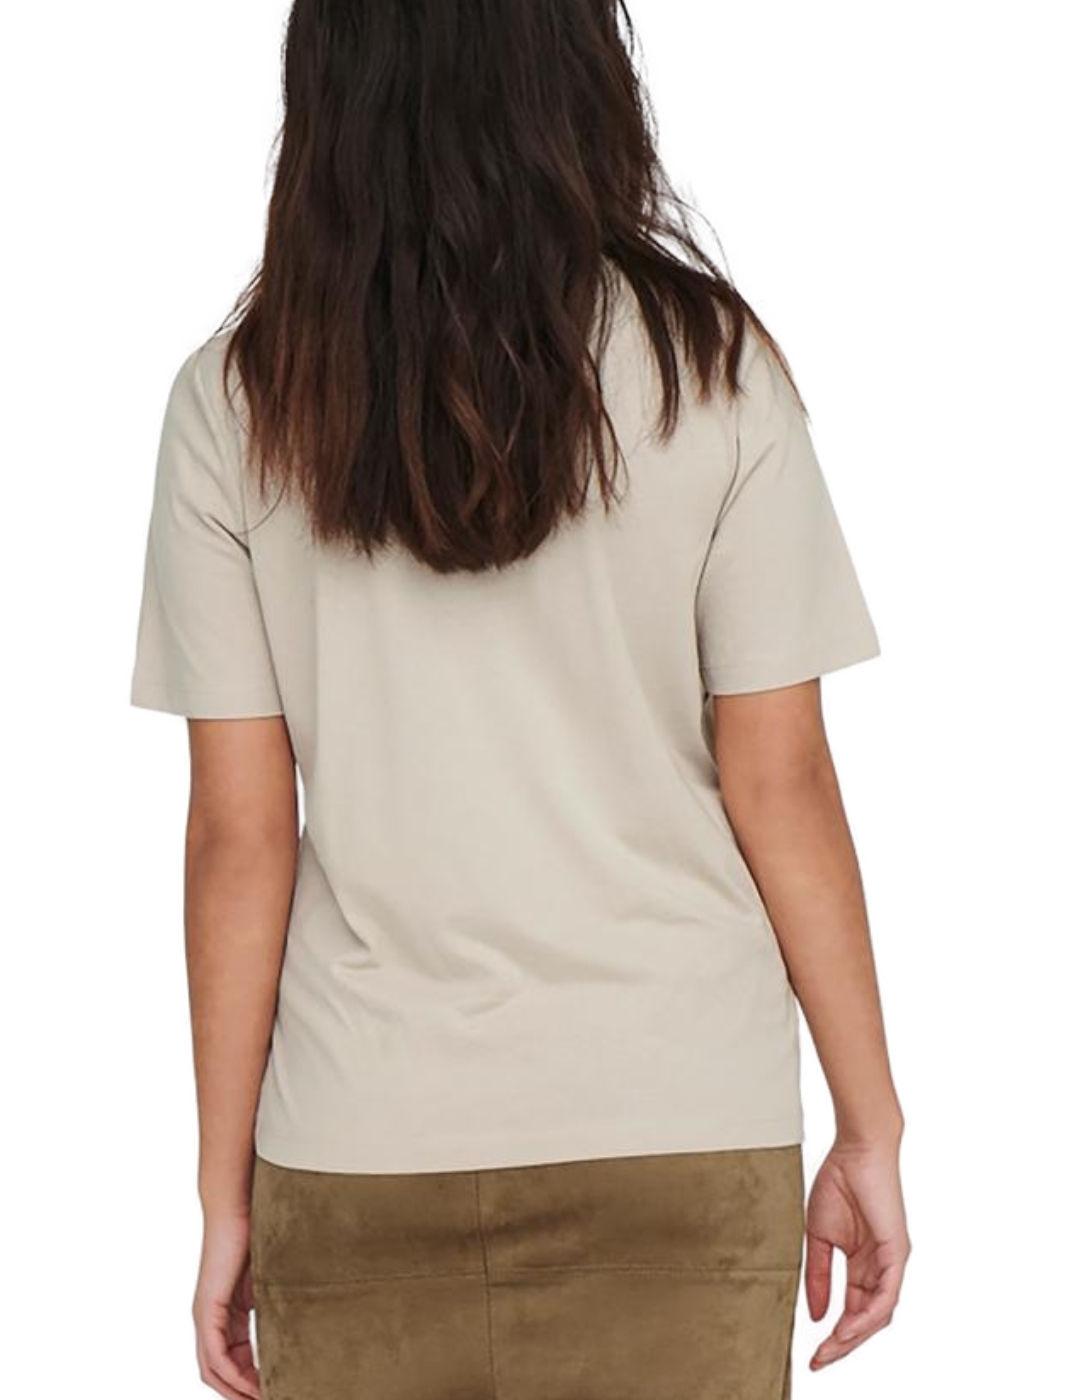 Camiseta Only Lonly beige manga corta para mujer